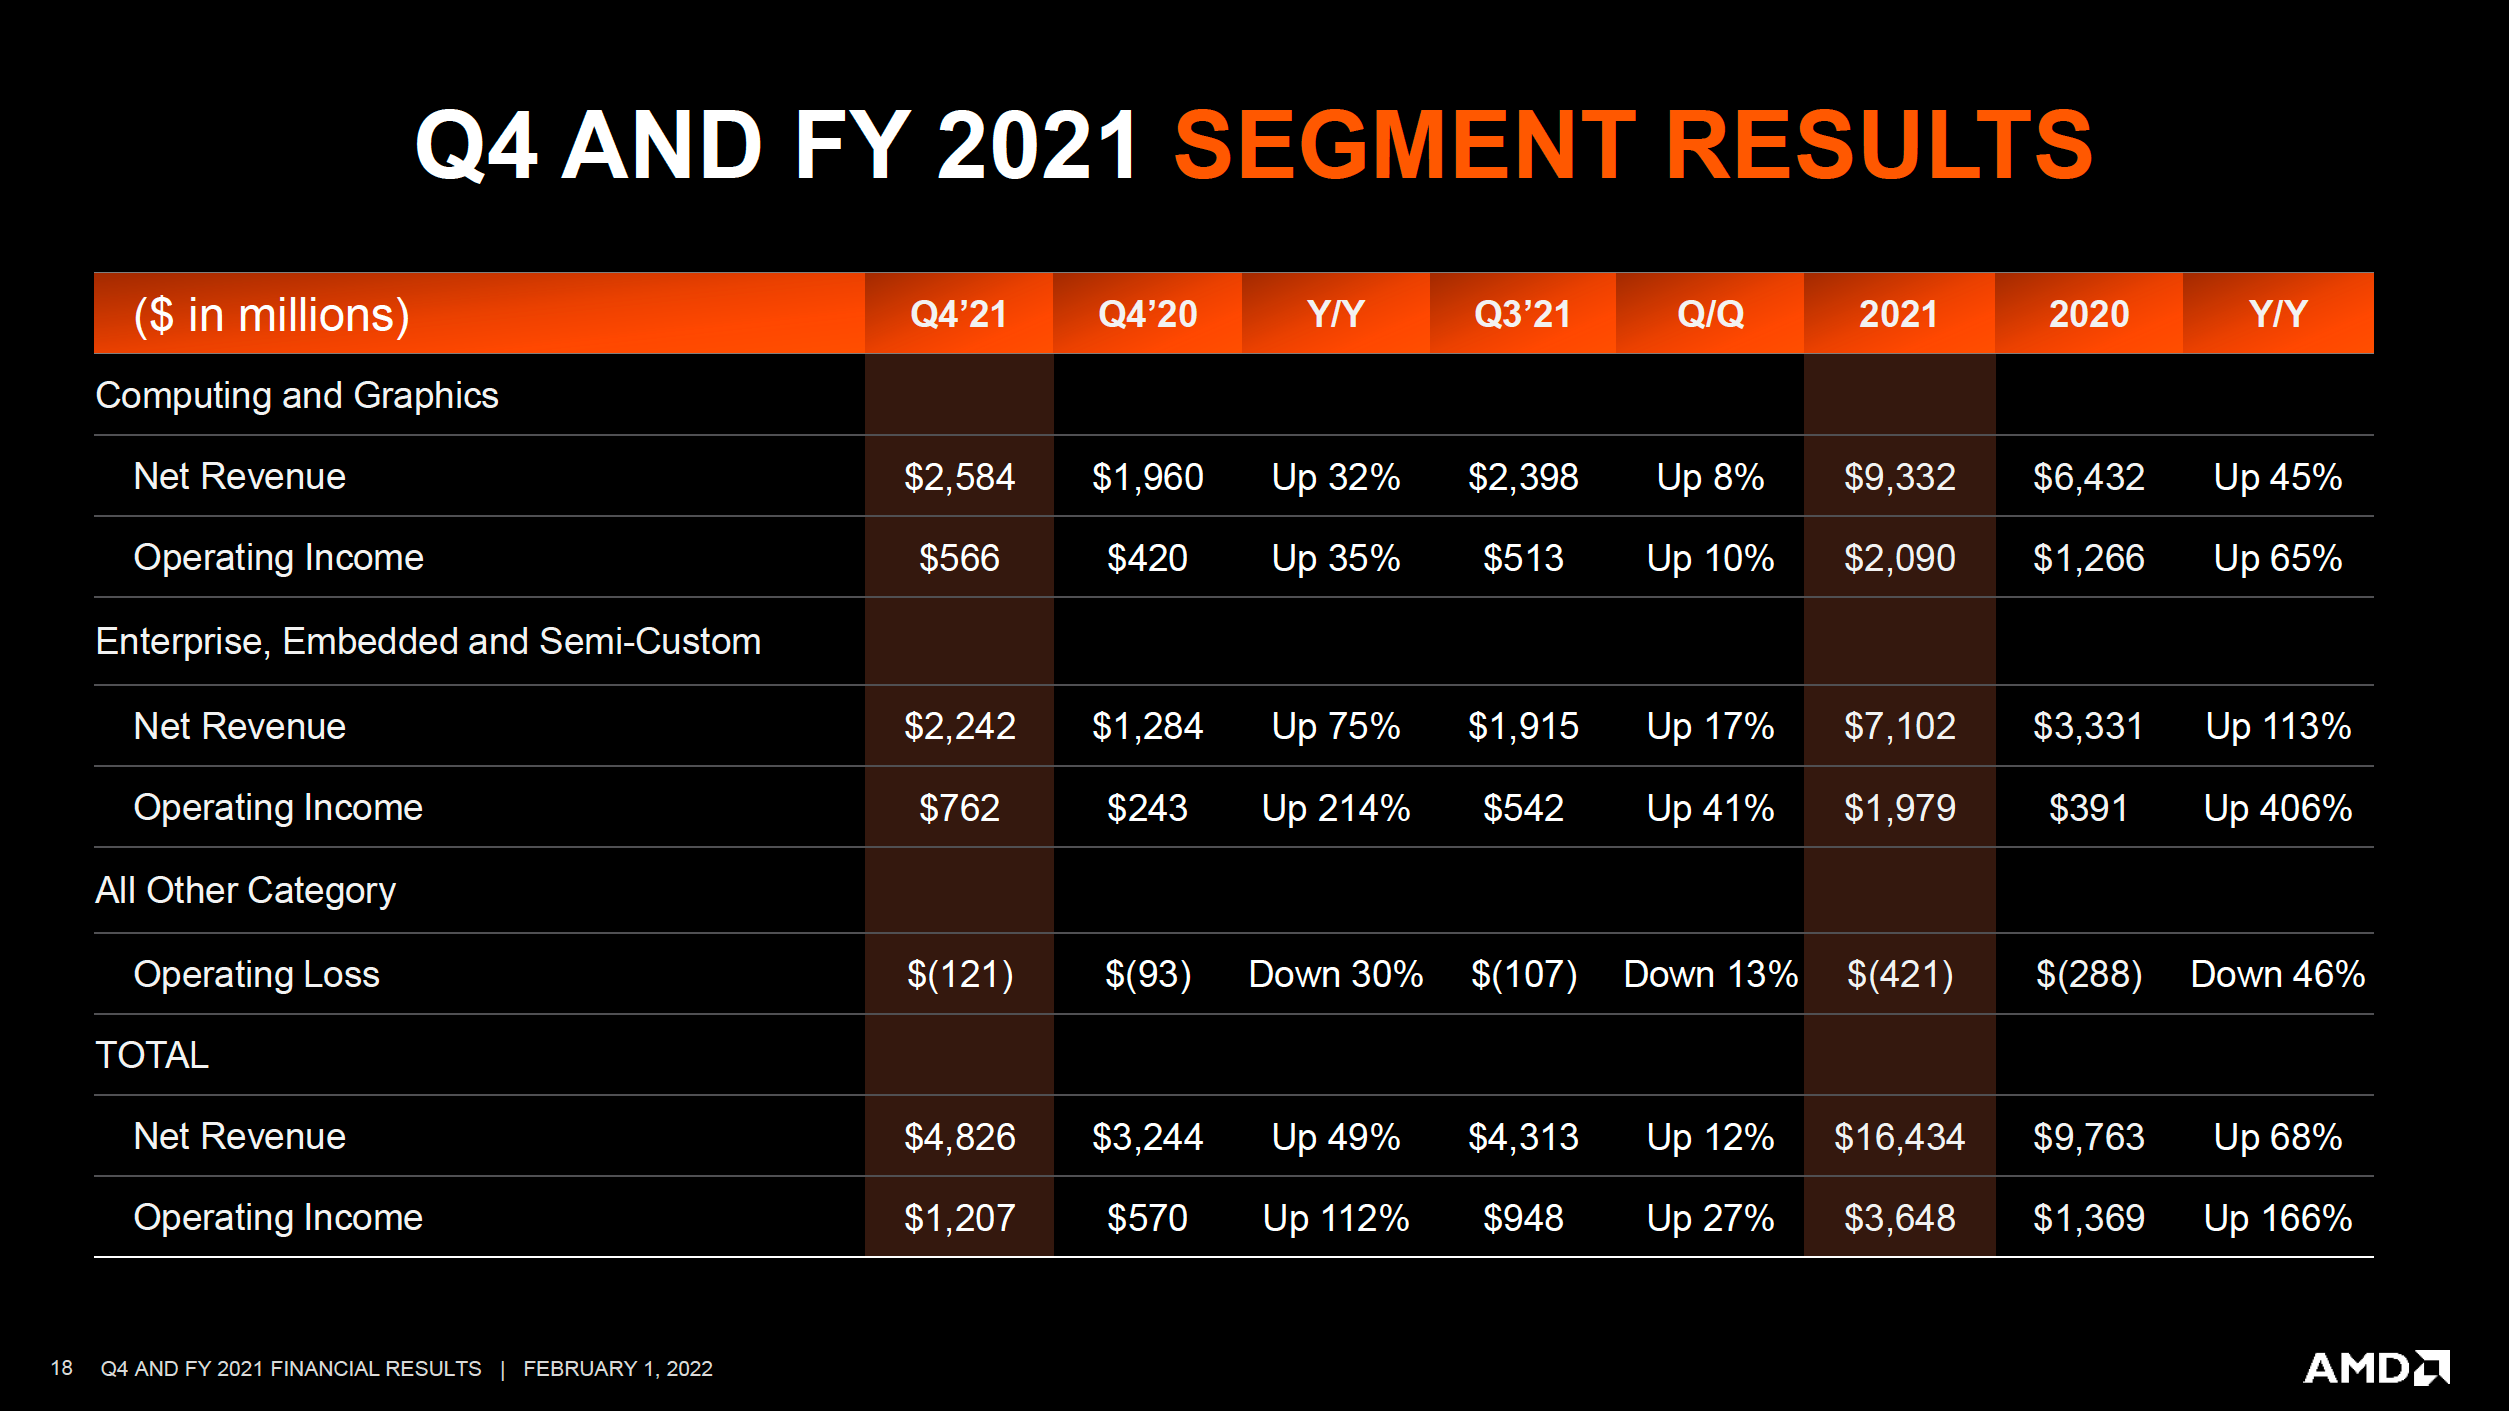 AMD отчиталась о лучшем квартале за свою историю и спрогнозировала $21,5 млрд выручки в 2022 году